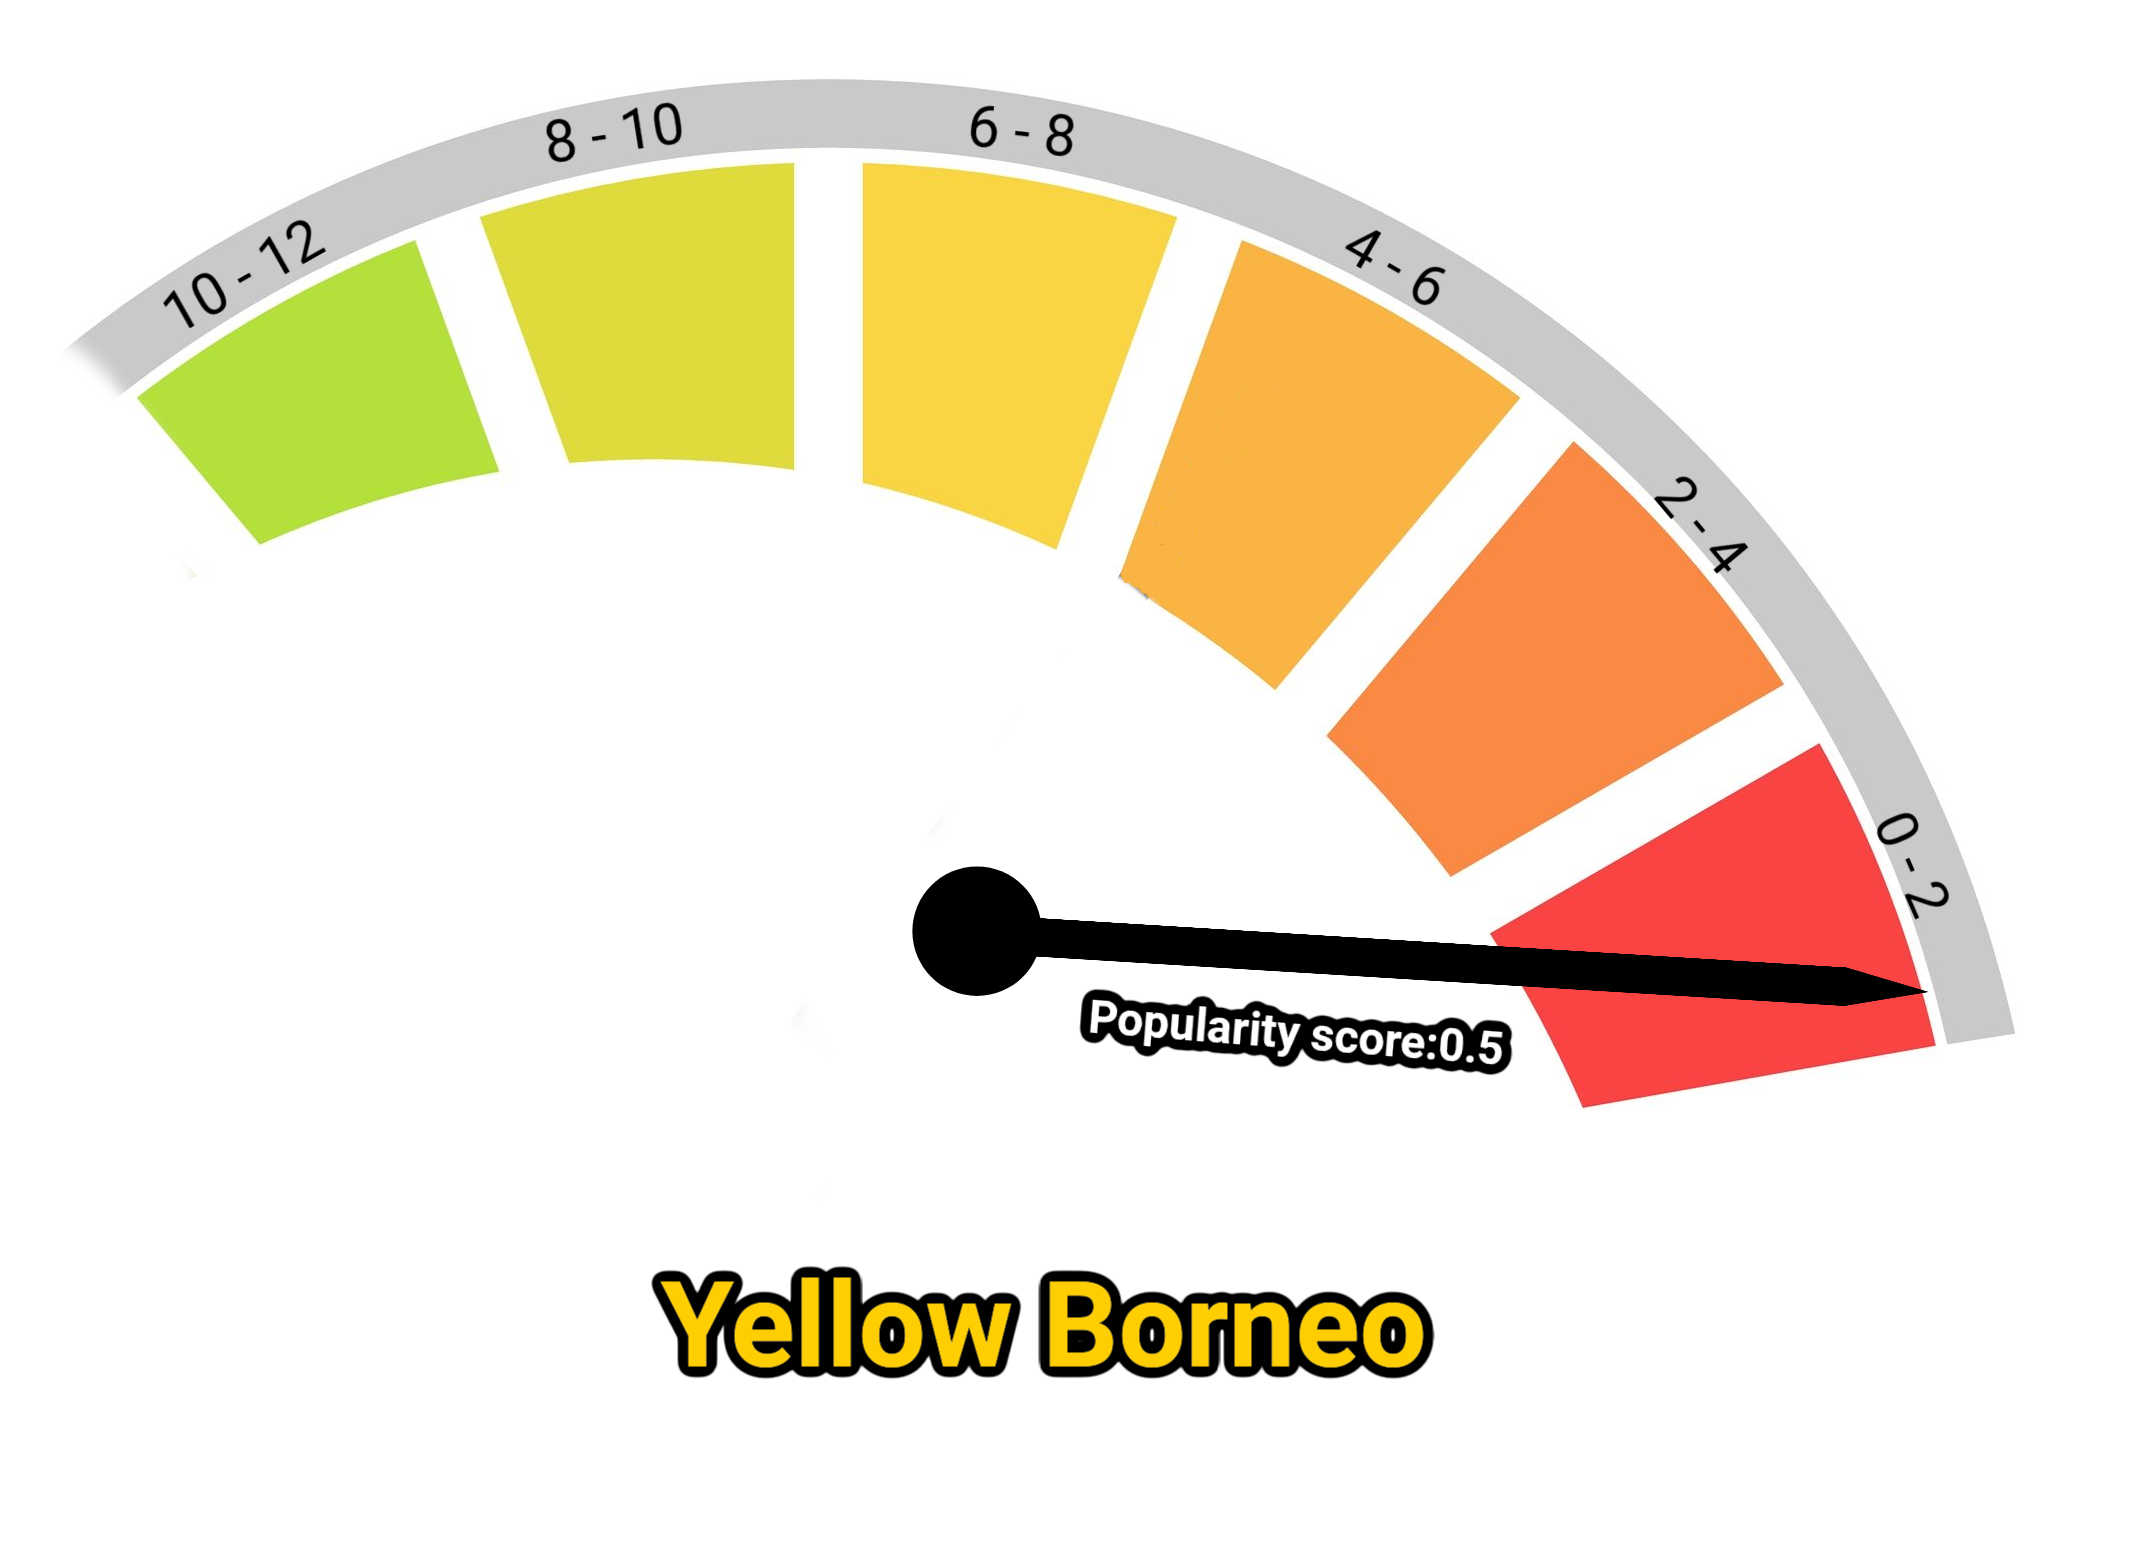 image of yellow borneo kratom popularity score